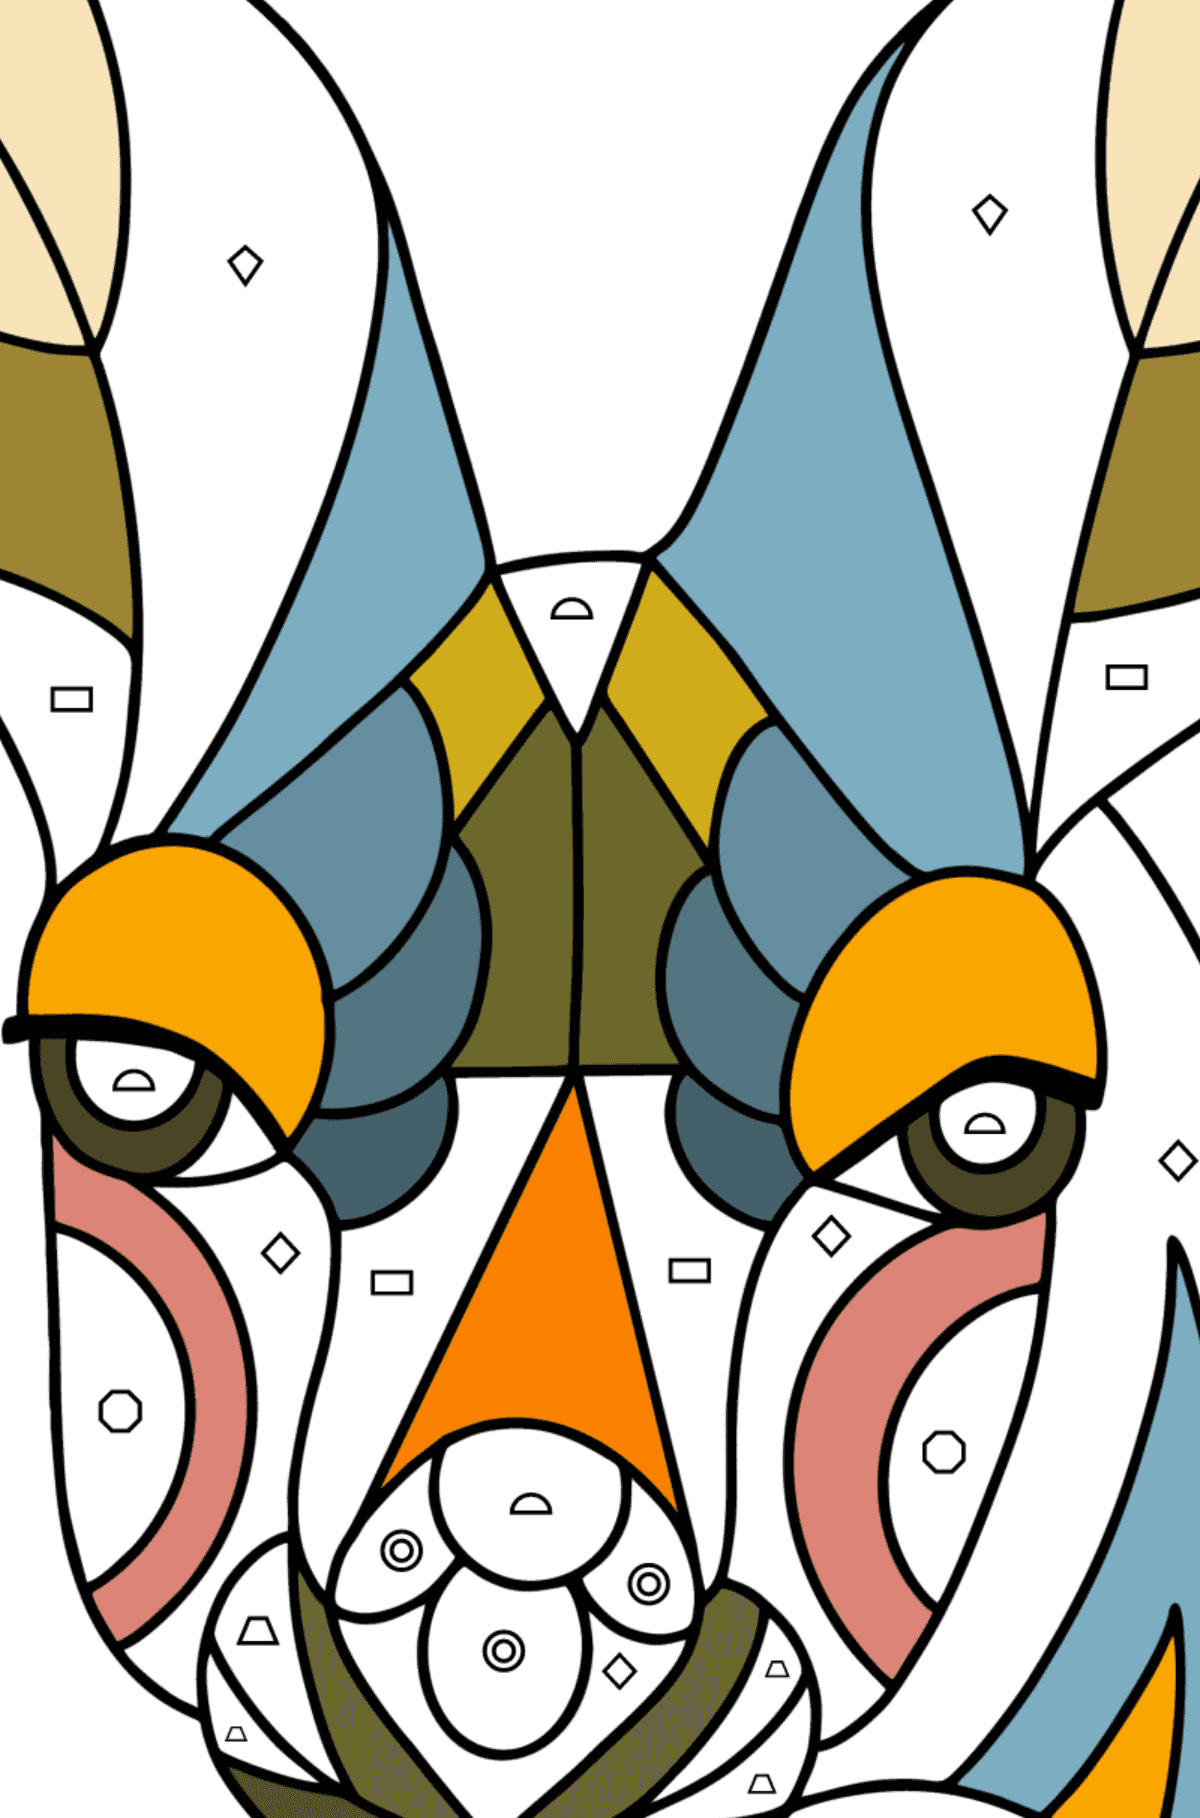 Kolorowanka Kangur antystresowy - Kolorowanie według figur geometrycznych dla dzieci